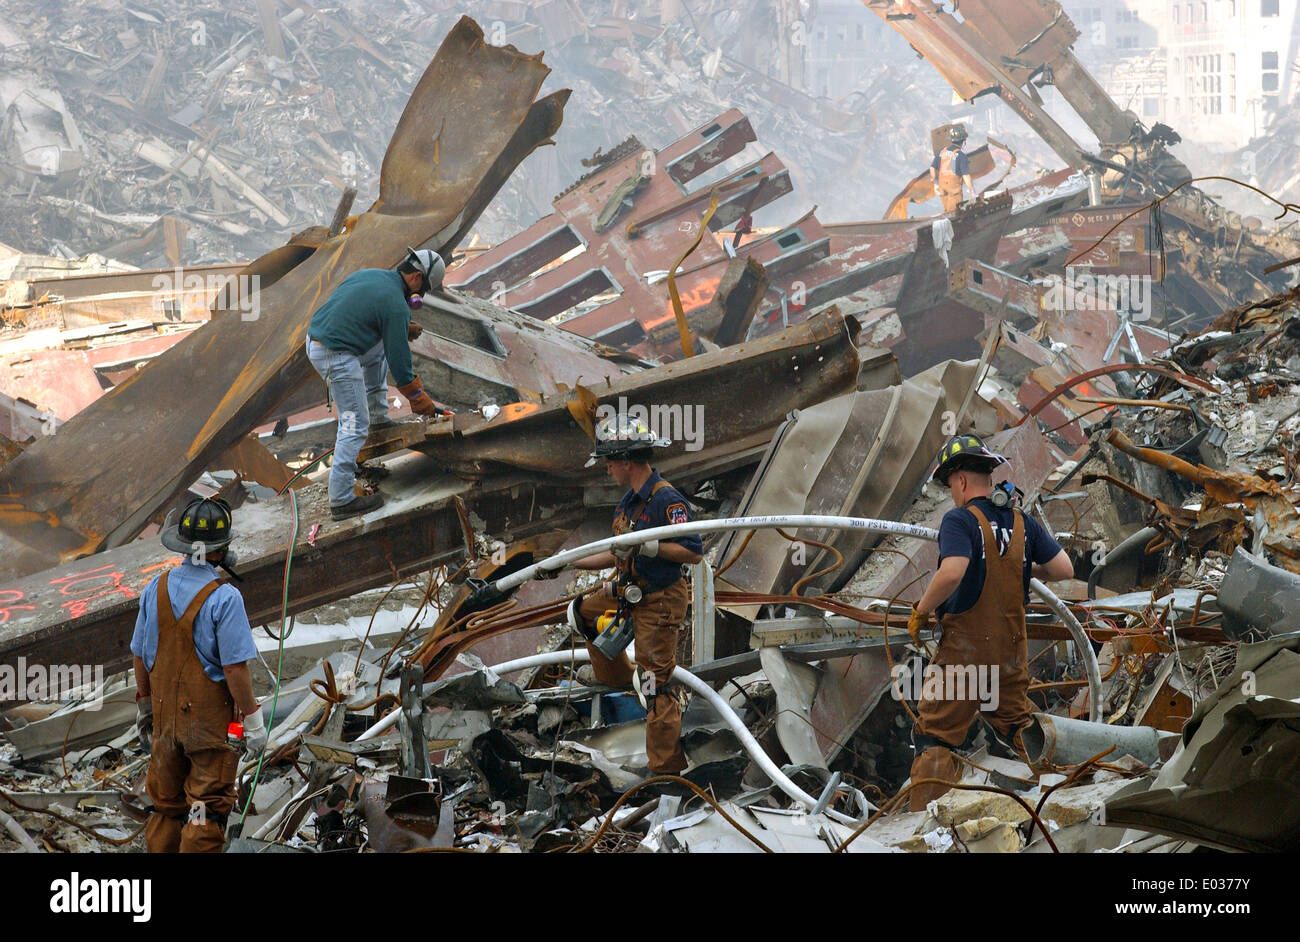 Les équipes de recherche et sauvetage en milieu urbain à travailler pour dégager les décombres de l'épave du World Trade Center à la suite d'une attaque terroriste massive qui a détruit les tours jumelles tuant 2 606 personnes le 18 septembre 2001 à New York, NY. Banque D'Images